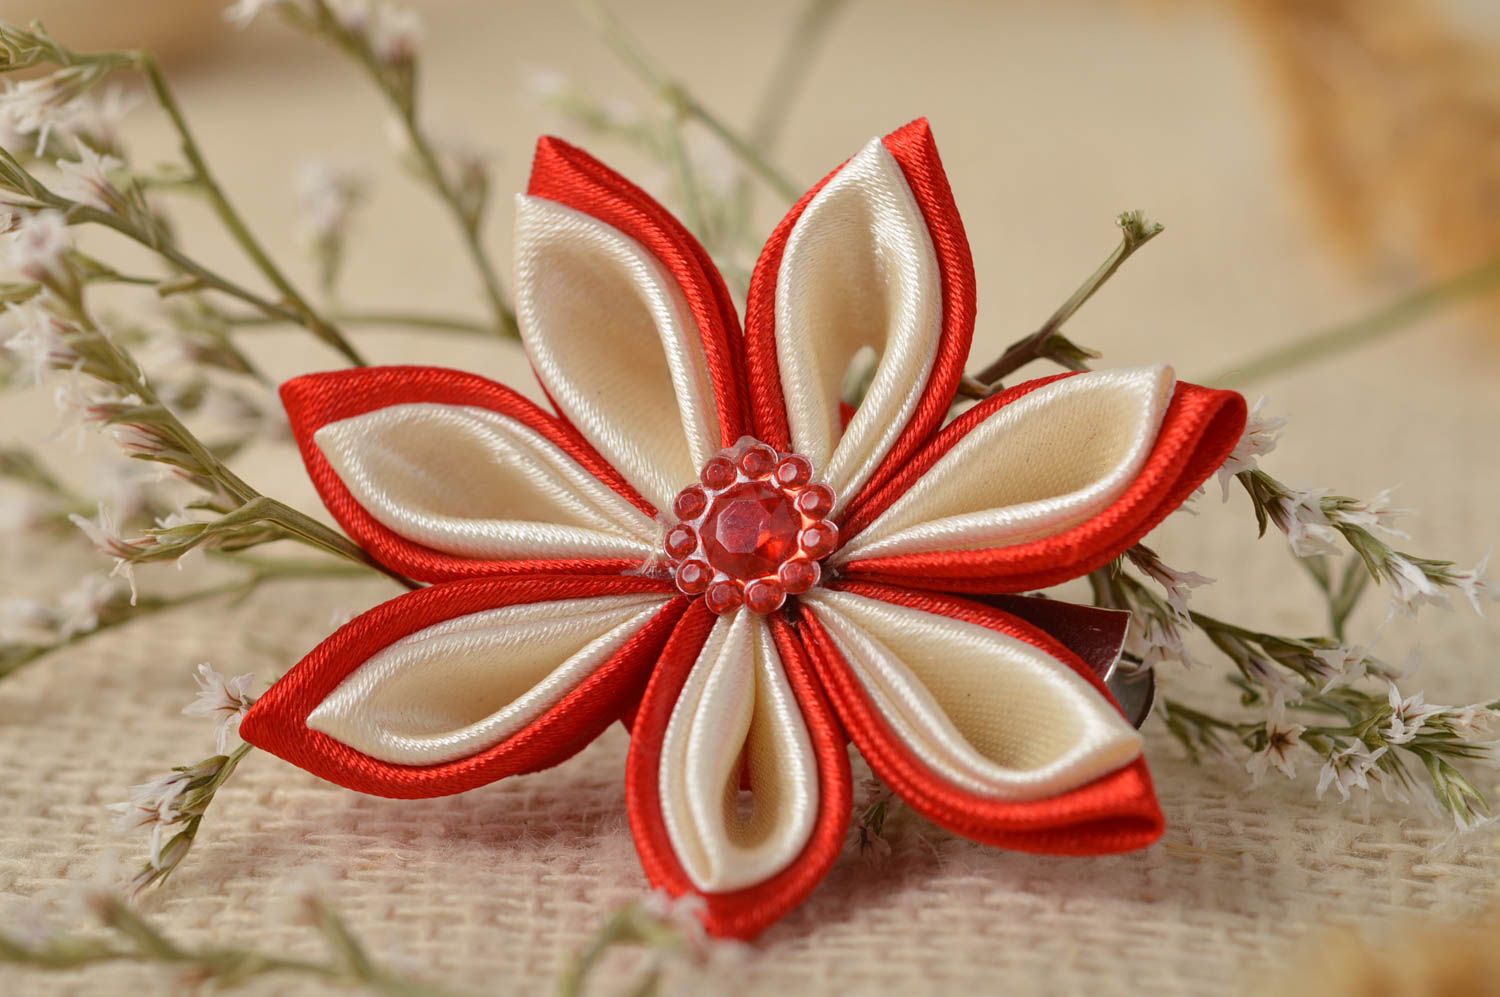 Handmade Frisur Haarspange Blume Haarspange Mode Accessoire in Rot schön grell foto 1